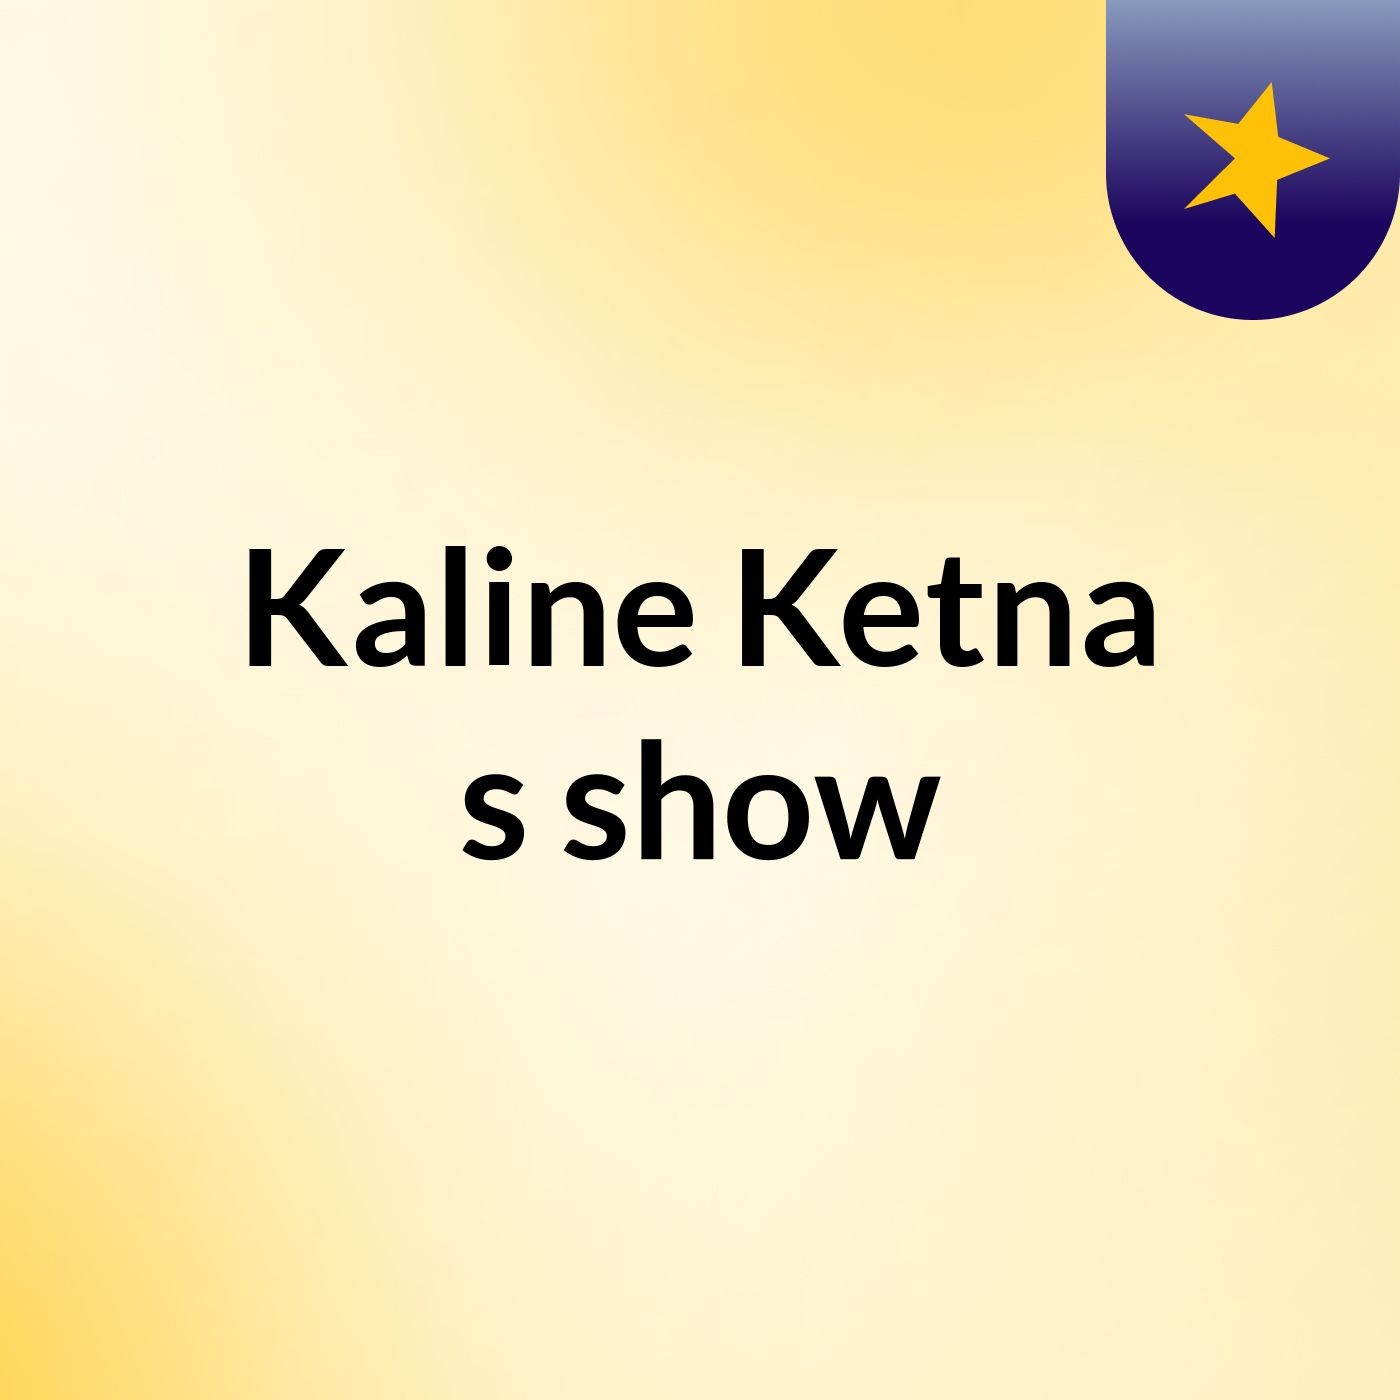 Kaline Ketna's show